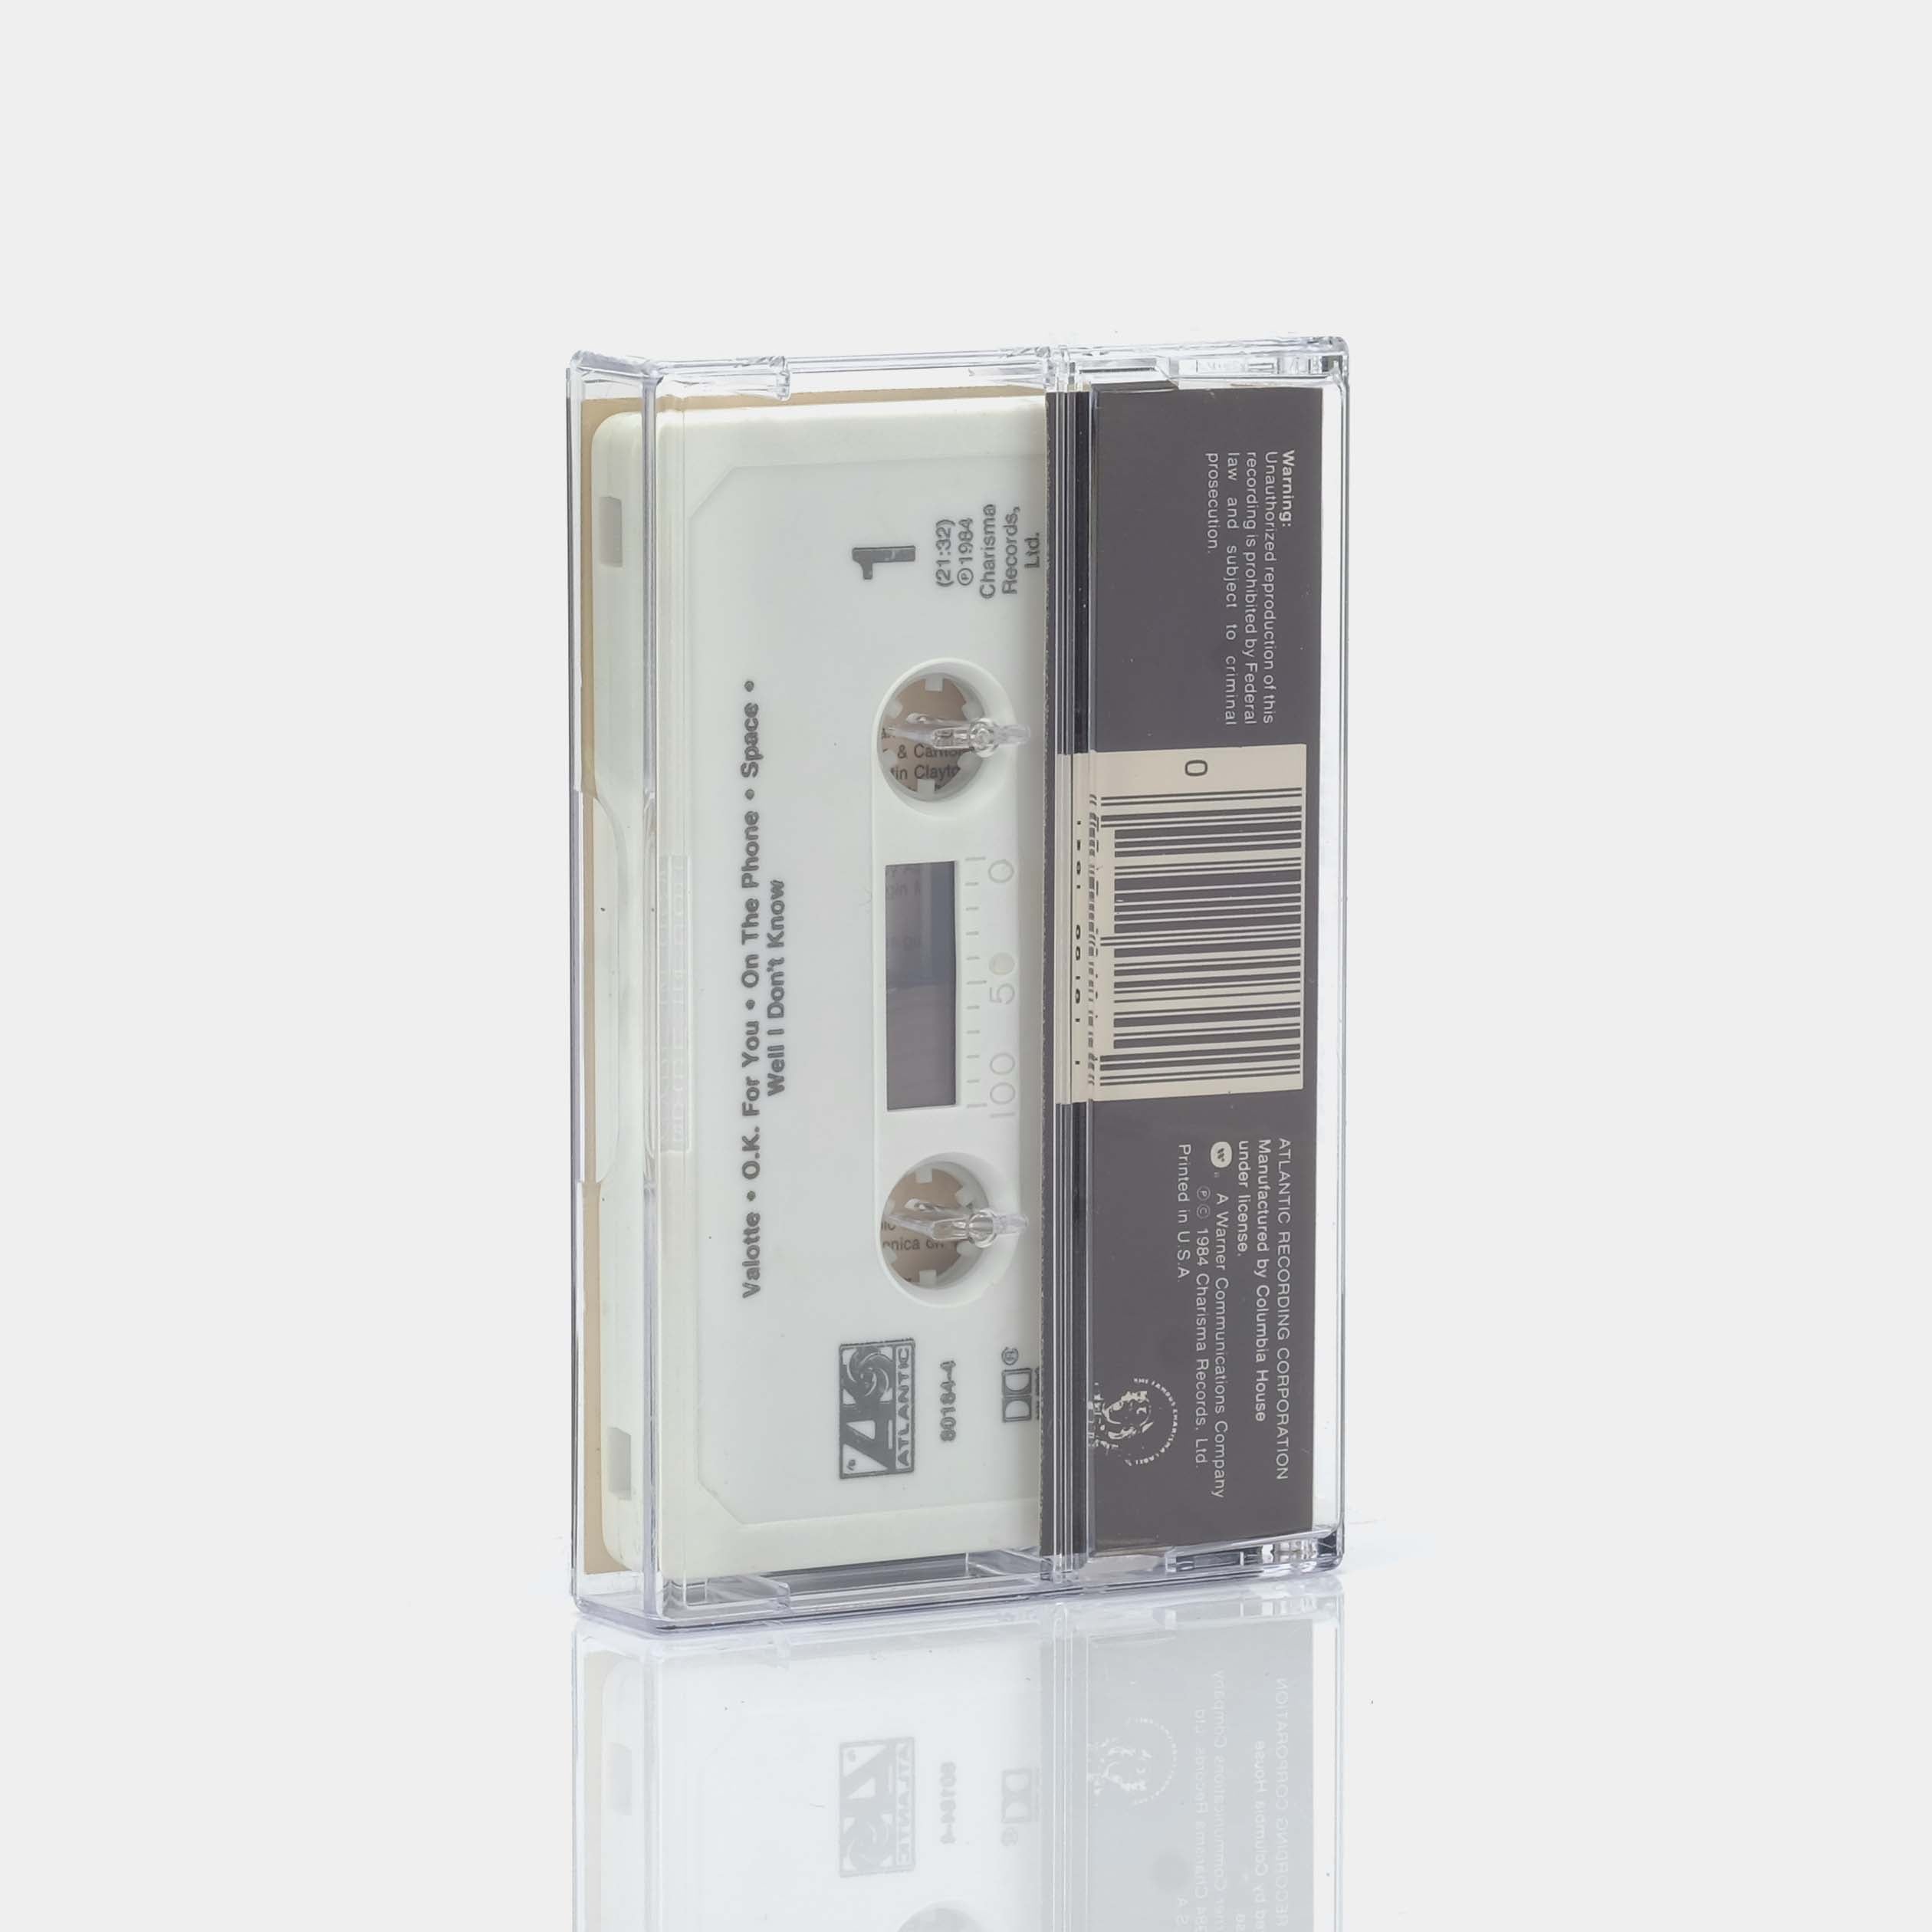 Julian Lennon - Valotte Cassette Tape